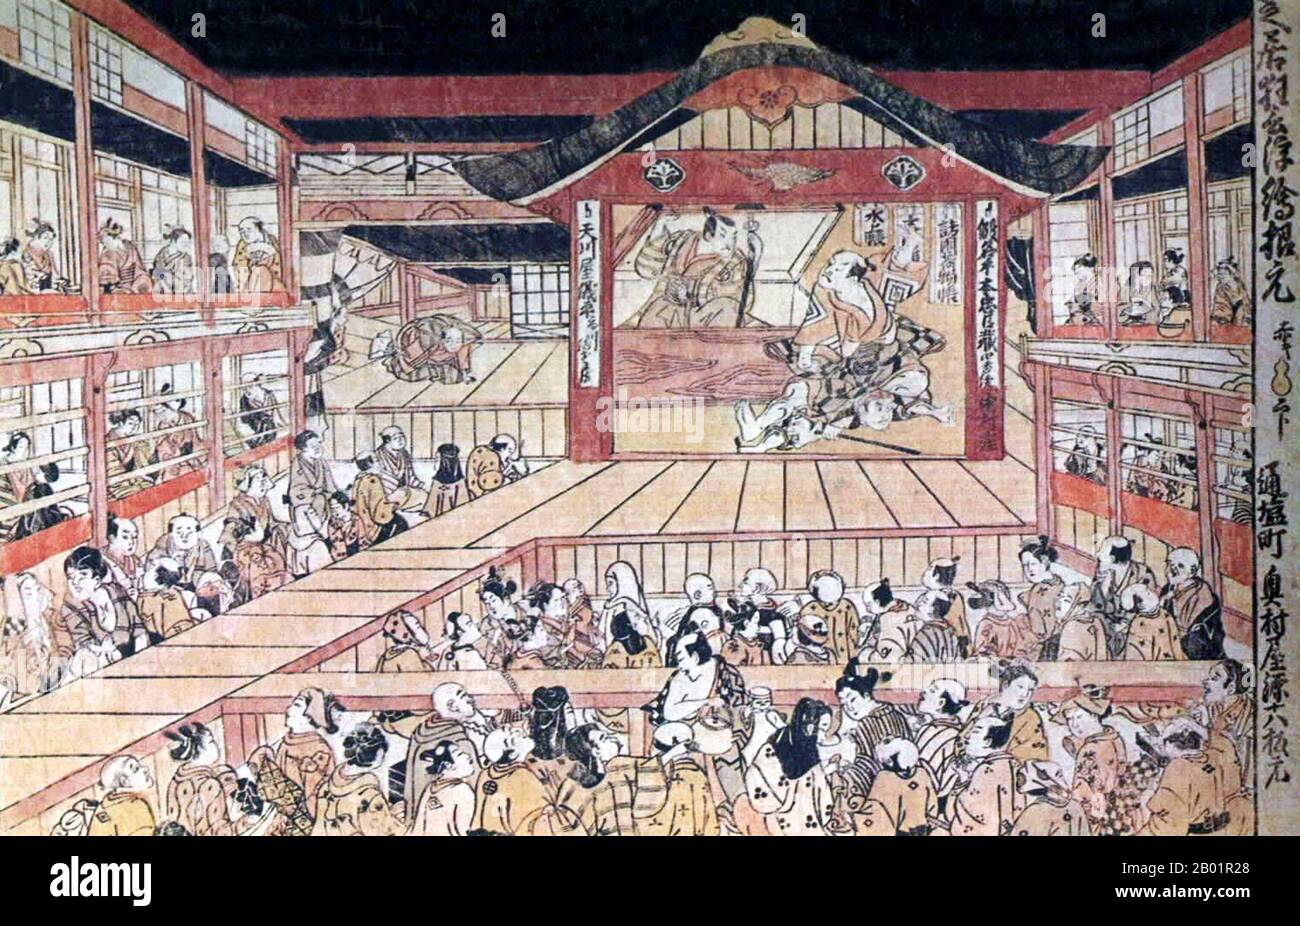 Japan: Szene aus dem Stück Kanadehon Chûshingura im Nakamura Theater. Ukiyo-e Holzschnitt von Okumura Masanobu (1686 - 13. März 1764), 1749. Kabuki ist ein klassisches japanisches Tanzdrama. Das Kabuki-Theater ist bekannt für die Stilisierung seines Dramas und für das raffinierte Make-up, das einige seiner Künstler tragen. Die einzelnen Kanji-Charaktere von links nach rechts bedeuten Singen (歌), Tanz (舞) und Geschick (伎). Kabuki wird daher manchmal als die Kunst des „Singen und Tanzen“ übersetzt. Es handelt sich dabei jedoch um Ateji-Zeichen, die keine tatsächliche Etymologie widerspiegeln. Stockfoto